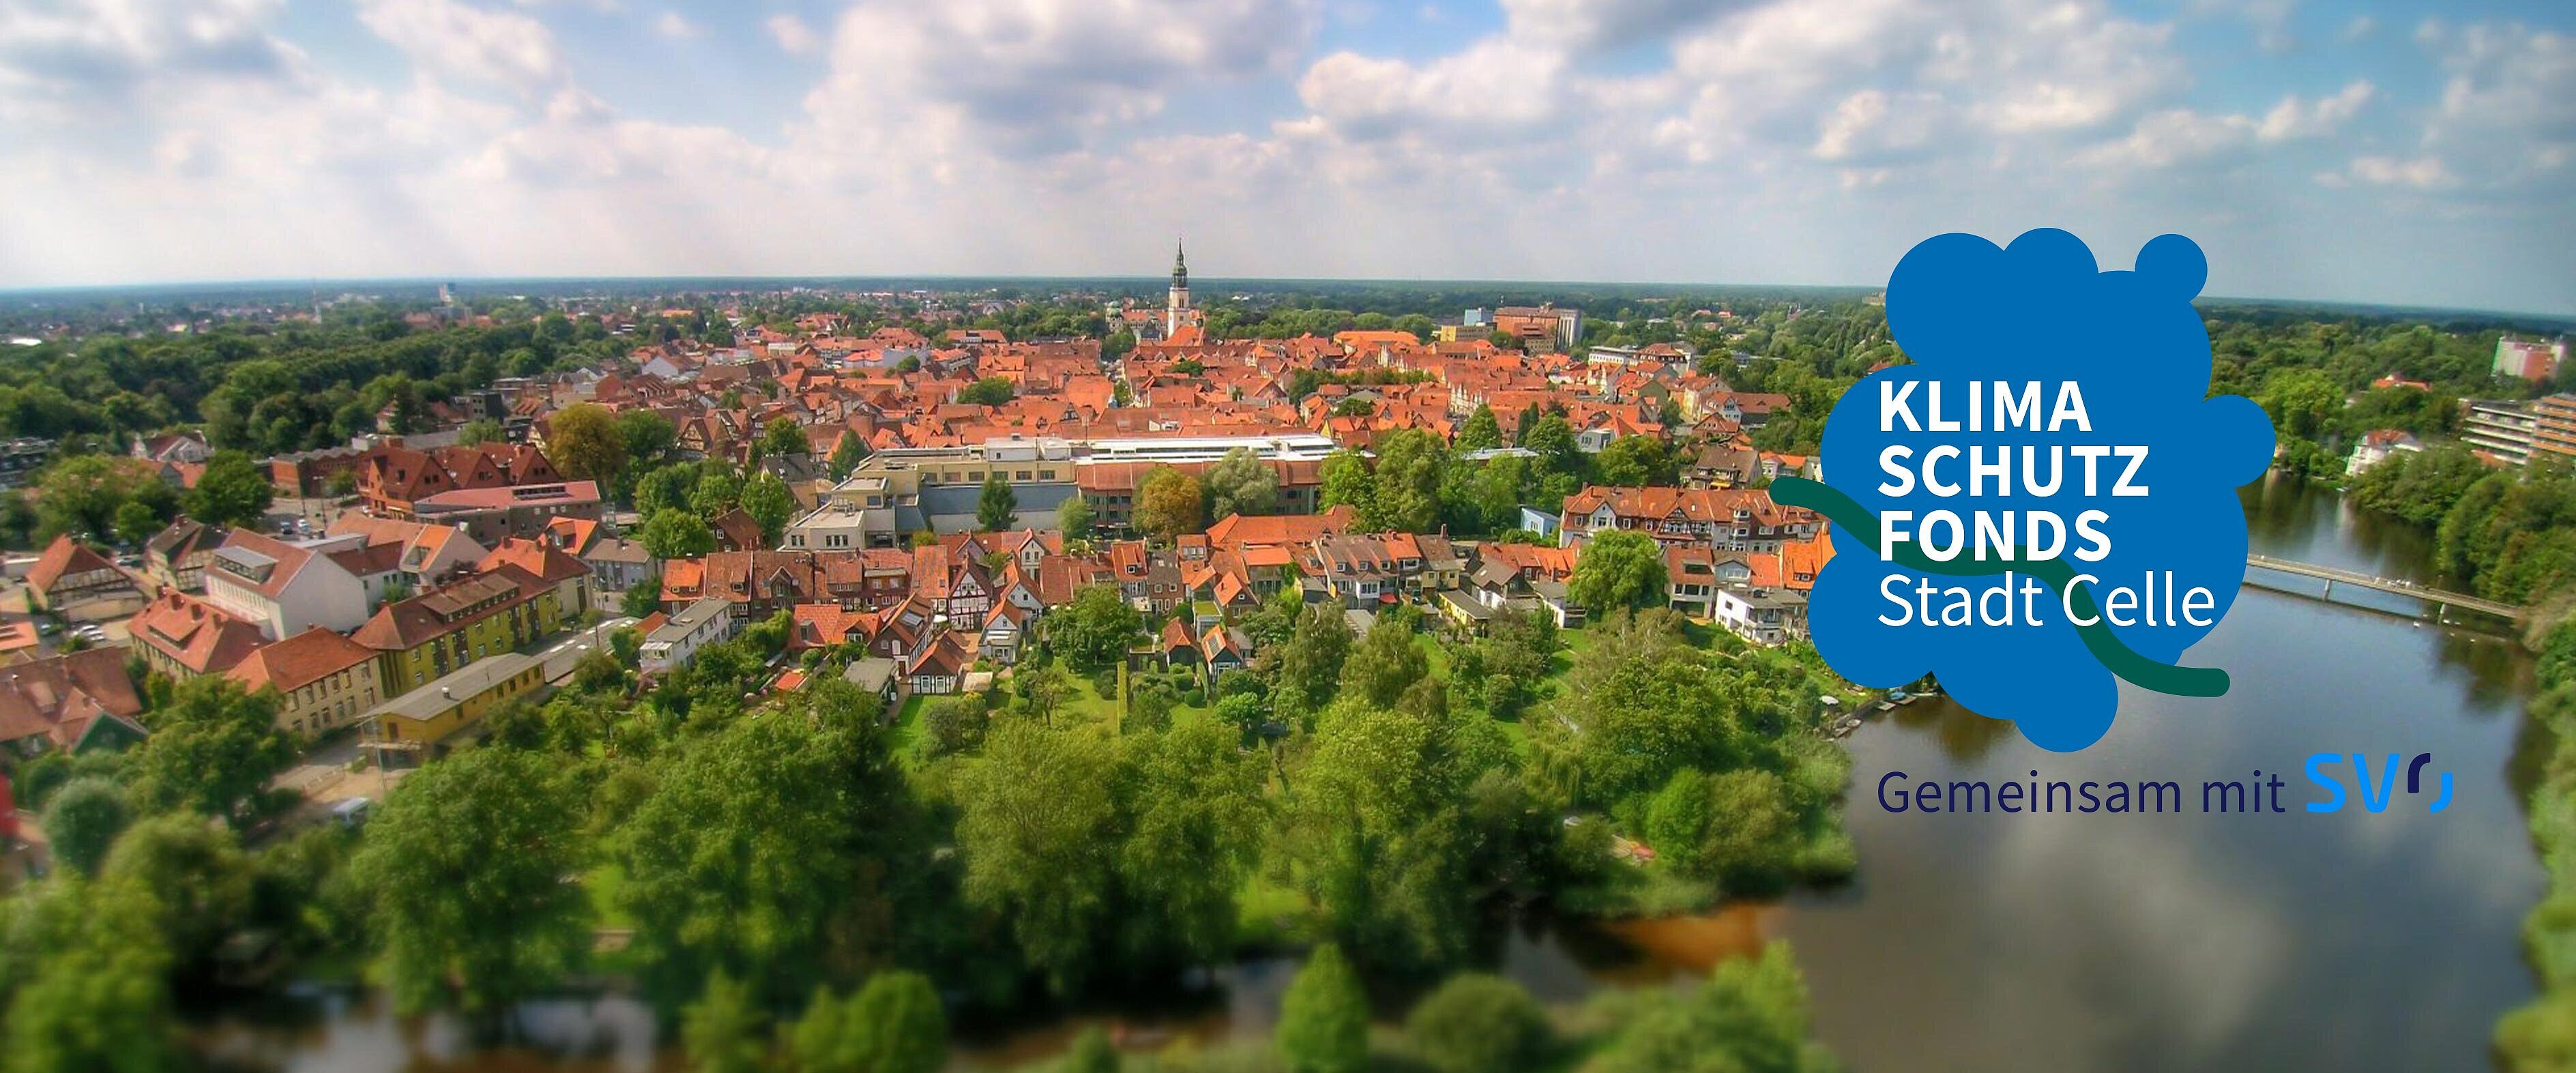 Foto zeigt eine Luftaufnahme vom Stadtzentrum Celles und das Logo des Klimaschutzfonds der Stadt Celle. 